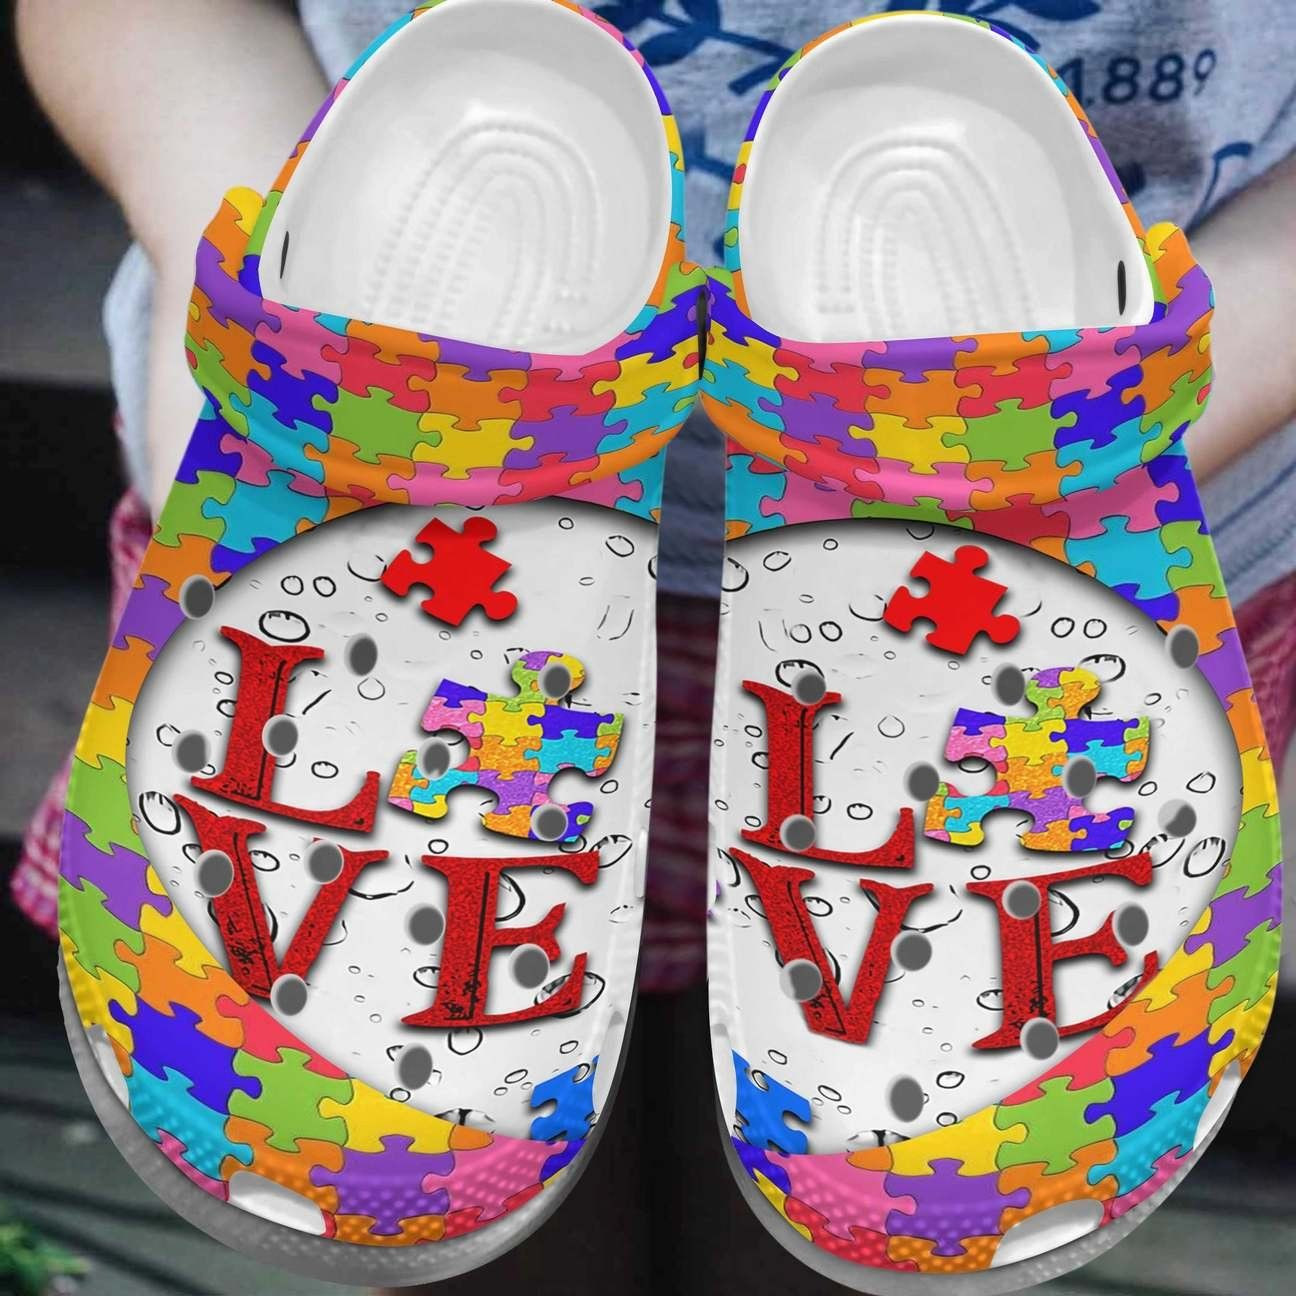 Autism Awareness Crocs Love Puzzle Crocband Clog Shoes For Men Women